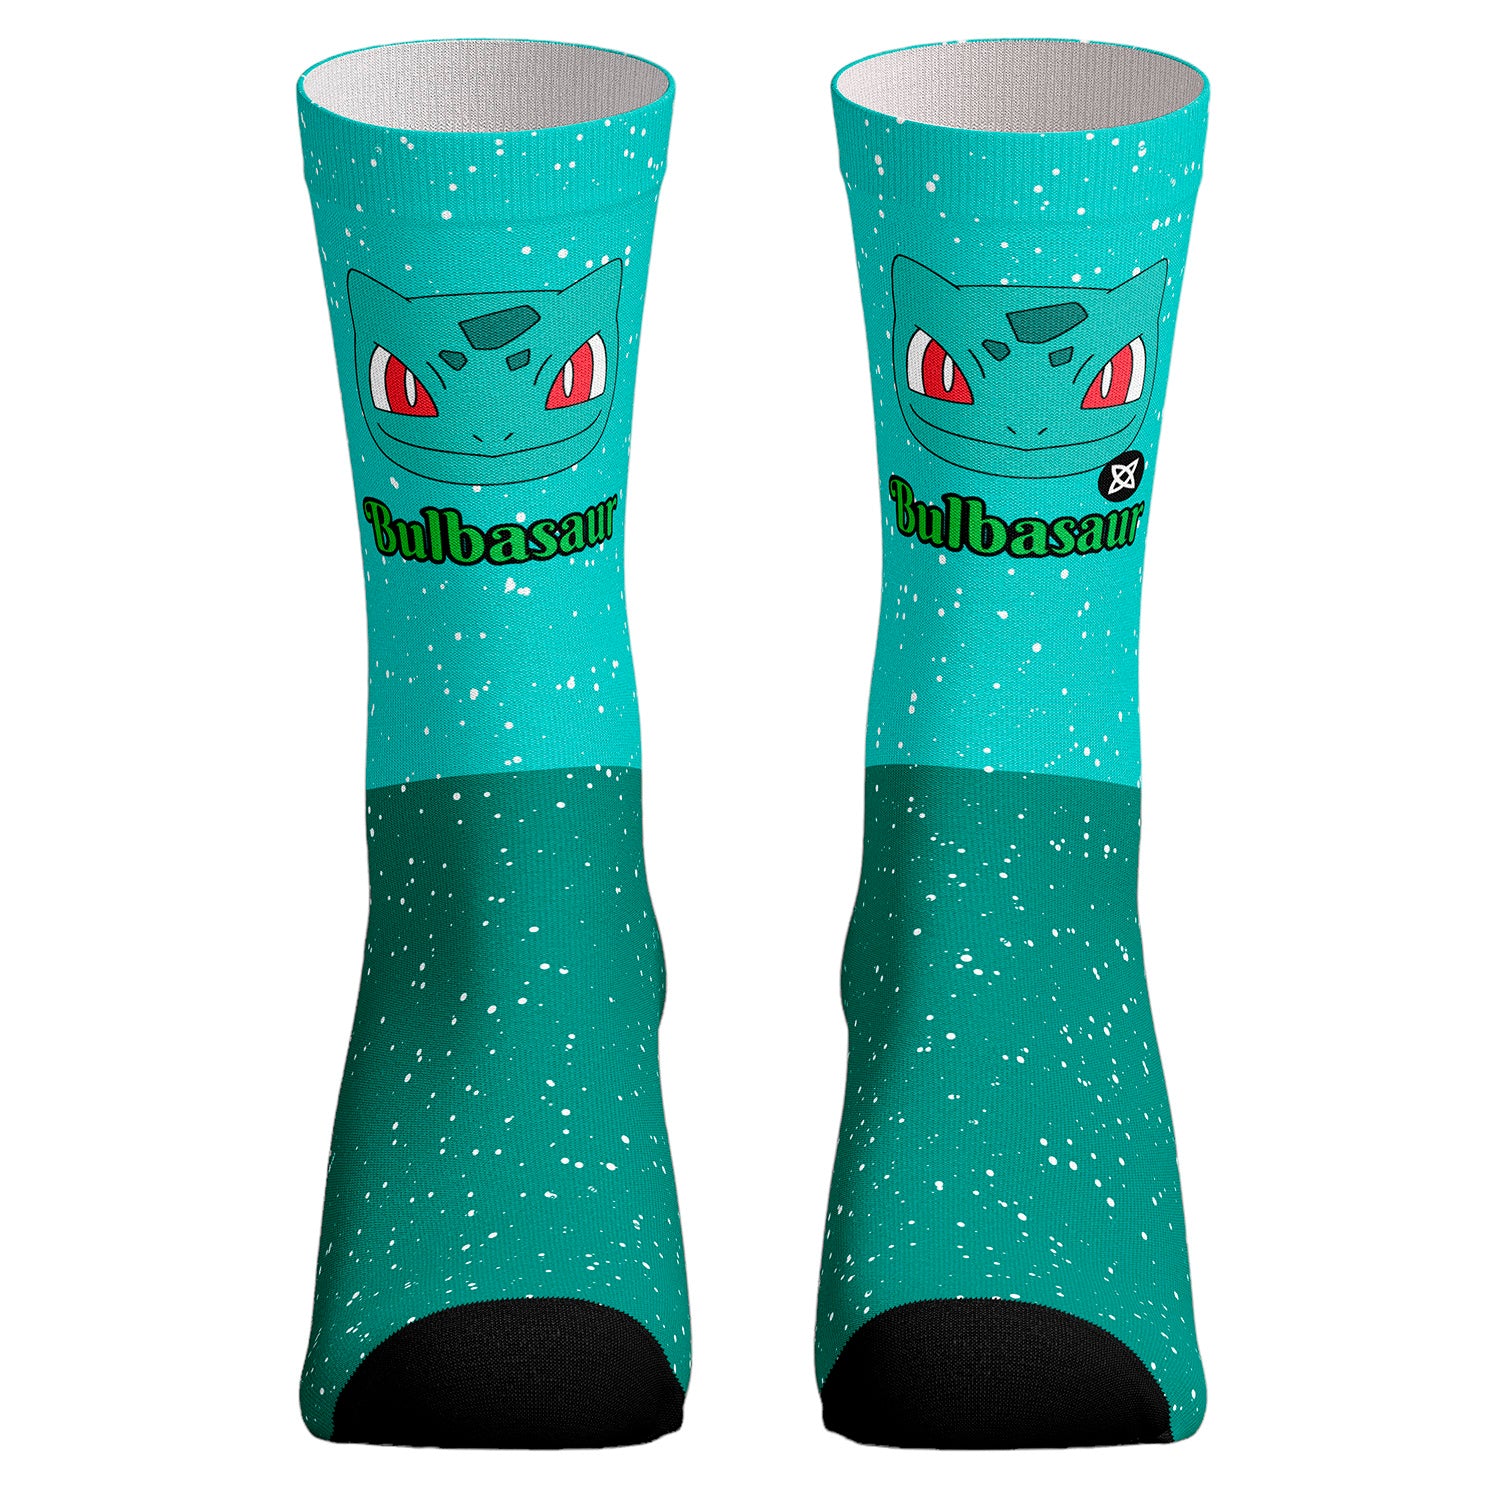 AyP Estampados - 🎉HOY ESTRENAMOS !! 🎉 Calcetines PERSONALIZADOS 🧦🤩 A  solo 1.000 (T 25-30) el par 💵 Envíos a todo Chile ✈️📦 ESTAMPAMOS TUS  IDEAS 💡 #estampados #personalizados #chile#antofagasta #calcetines #socks  #minnie #LOL #stitch